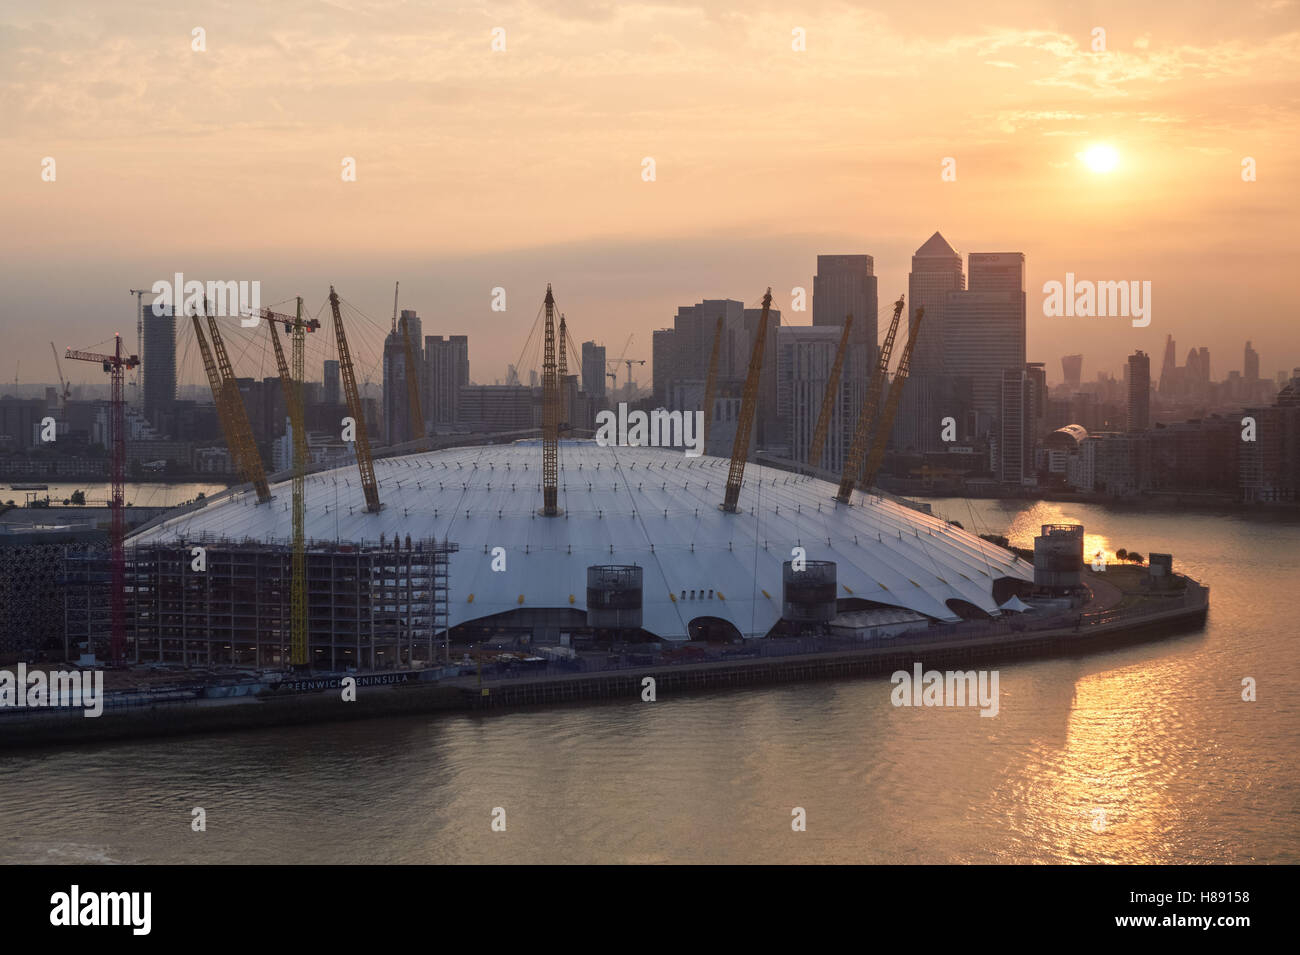 L'O2 Arena et Canary Wharf vu district à travers la Tamise au coucher du soleil, Londres Angleterre Royaume-Uni UK Banque D'Images